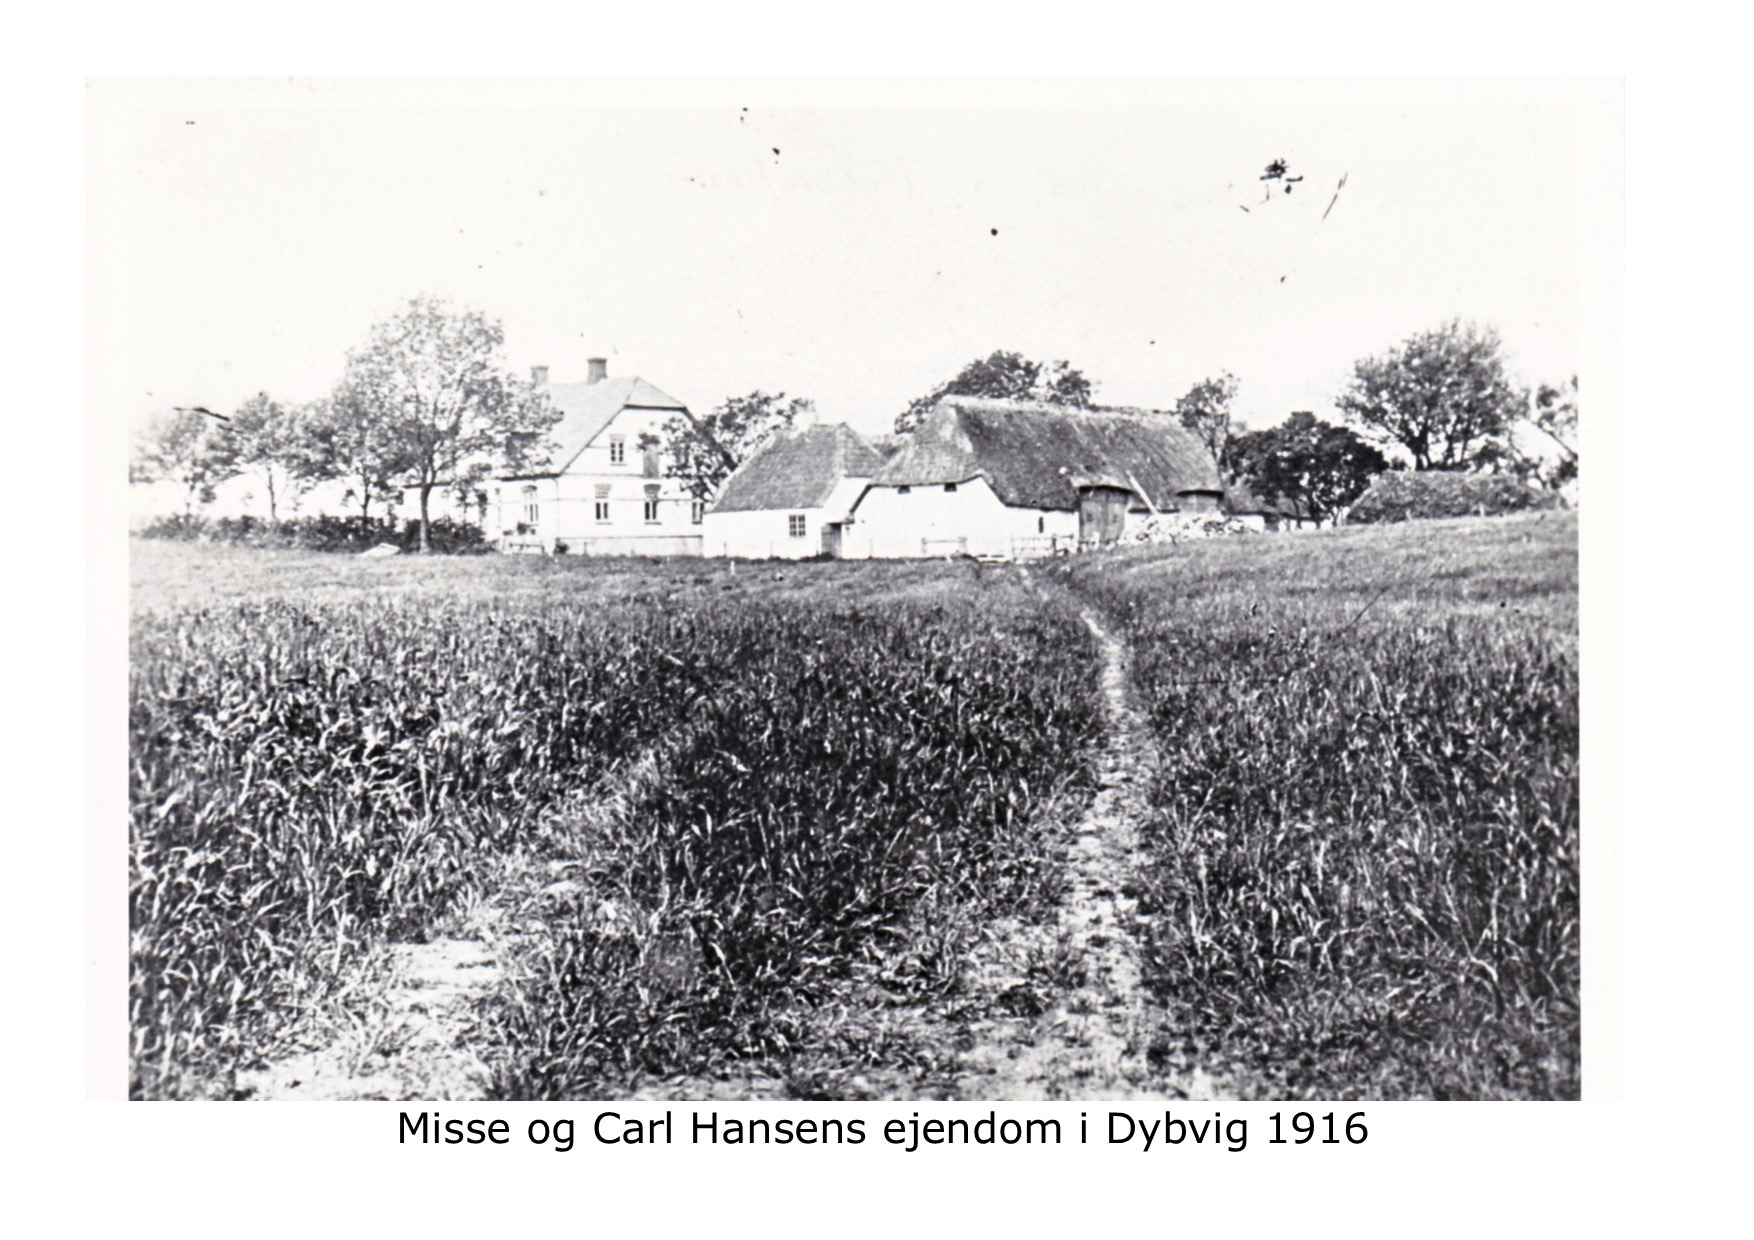 Misse og Carl Hansens gård i Dybvig 1916 